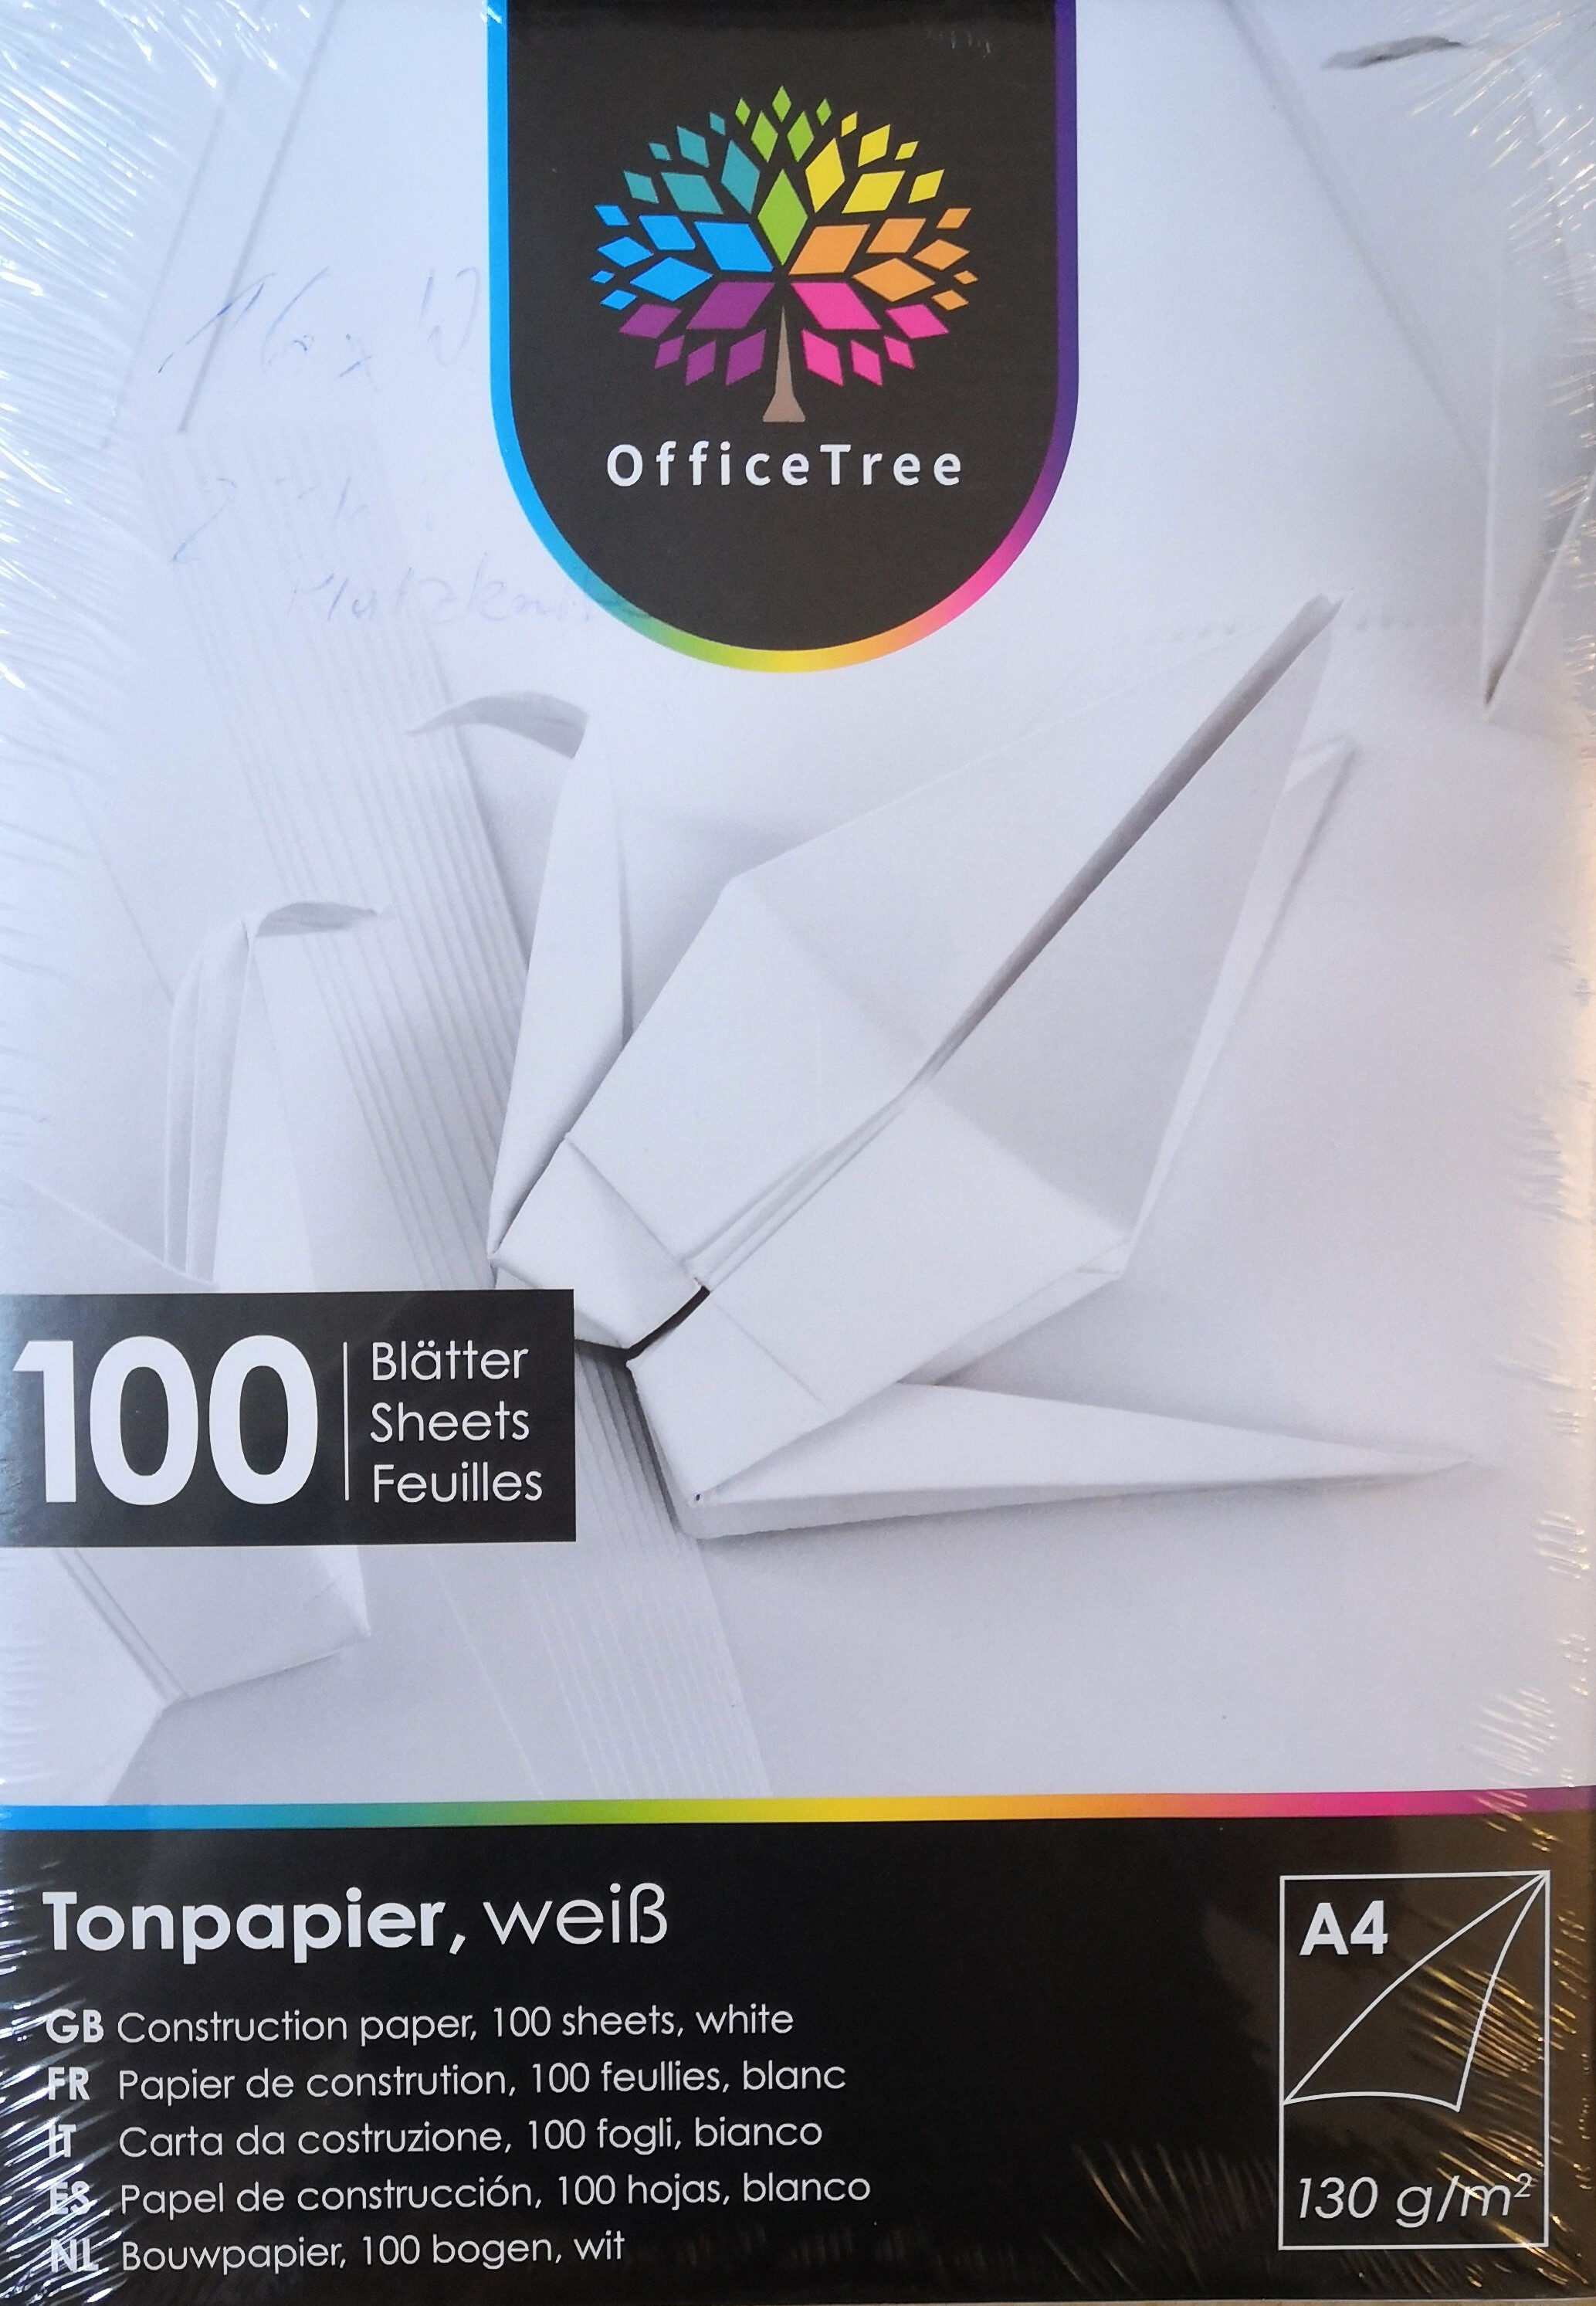 Tonpapier, weiß, A4, 130 g/m^2 - Product - de